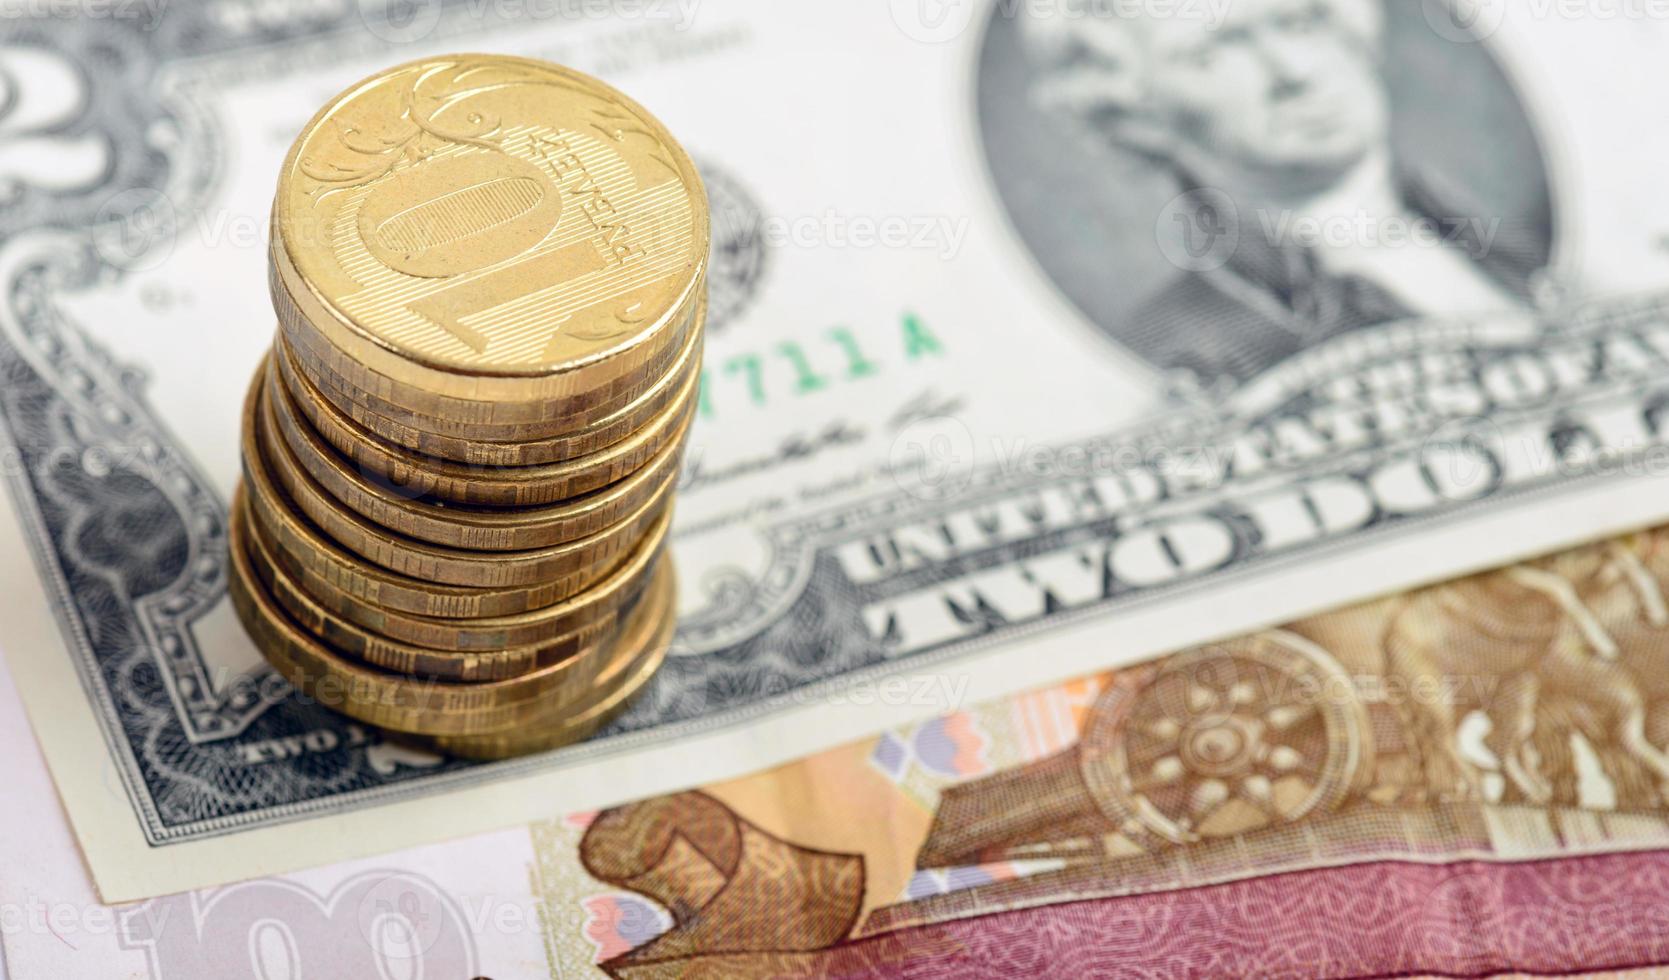 moedas russas na nota de dólar americano foto